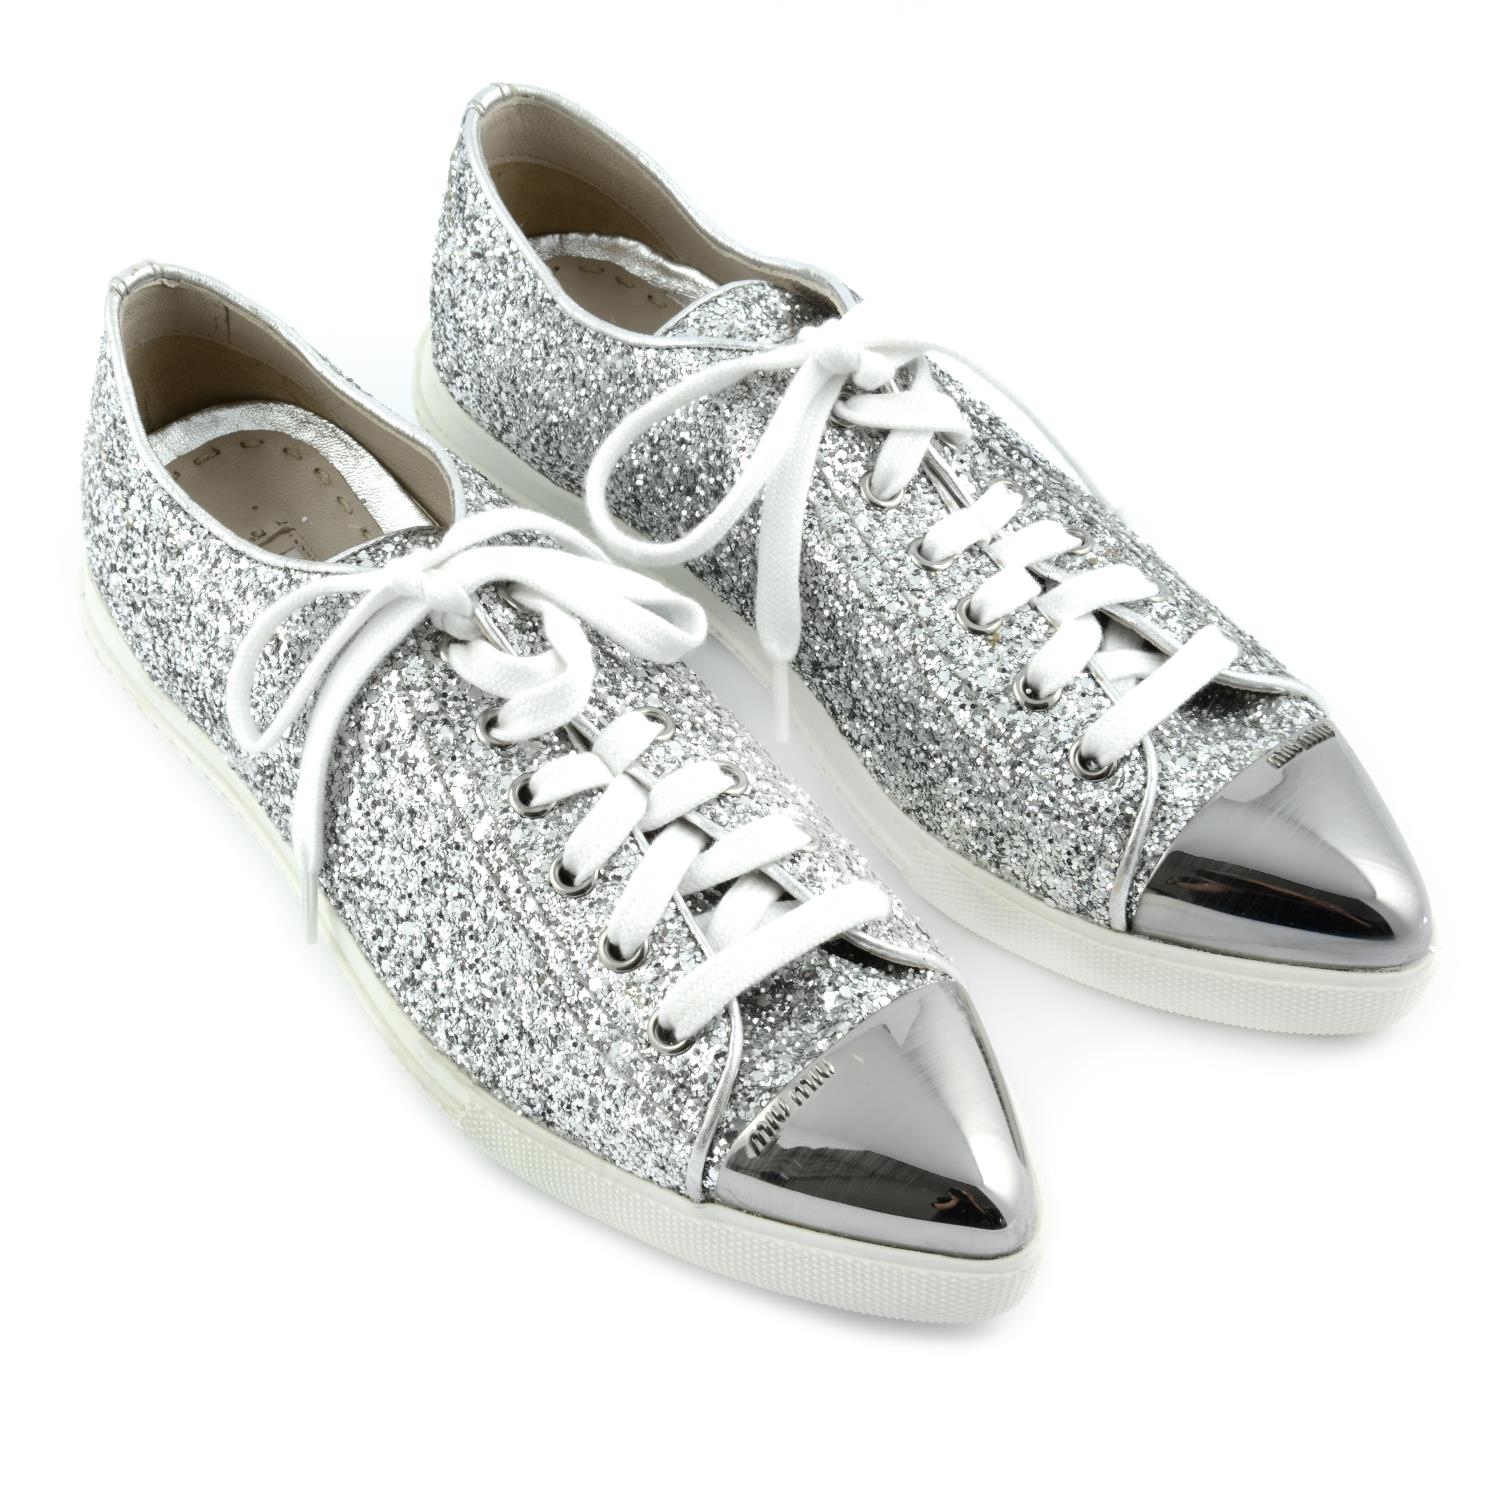 MIU MIU - a pair of silver glitter trainers.